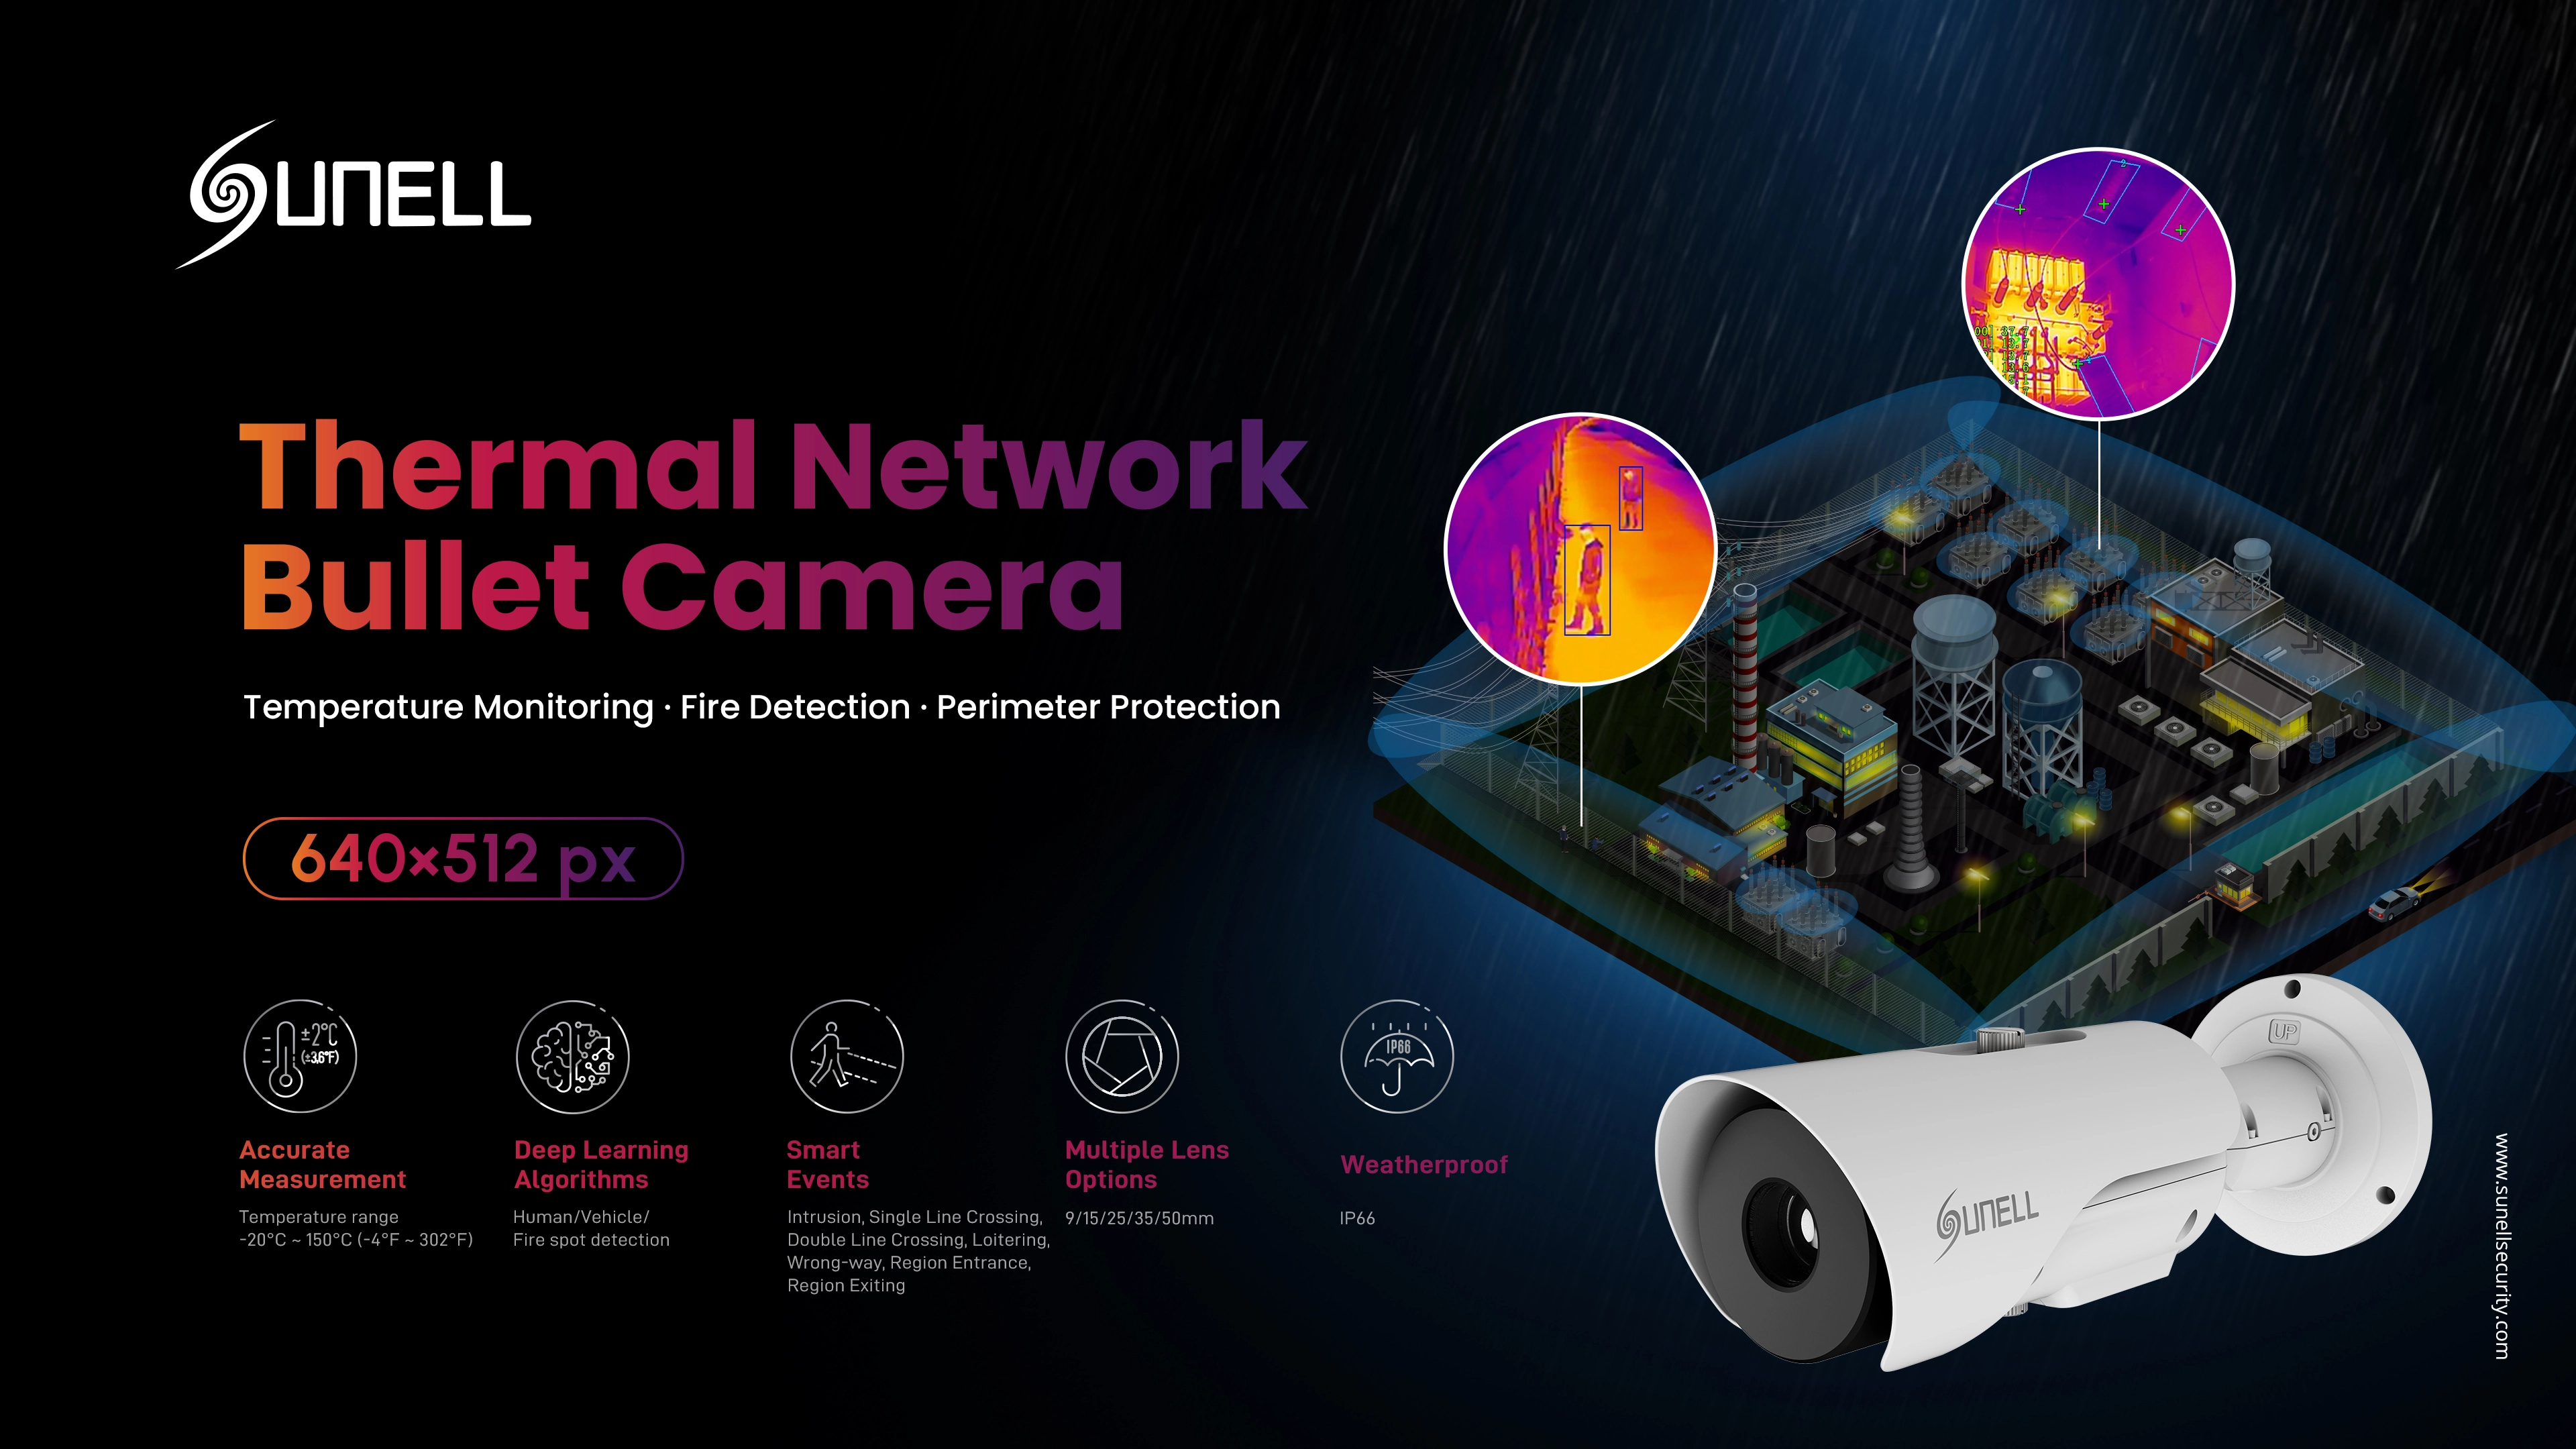 Sunell lance la nouvelle caméra Bullet thermique à imagerie thermique d’une résolution de 640×512